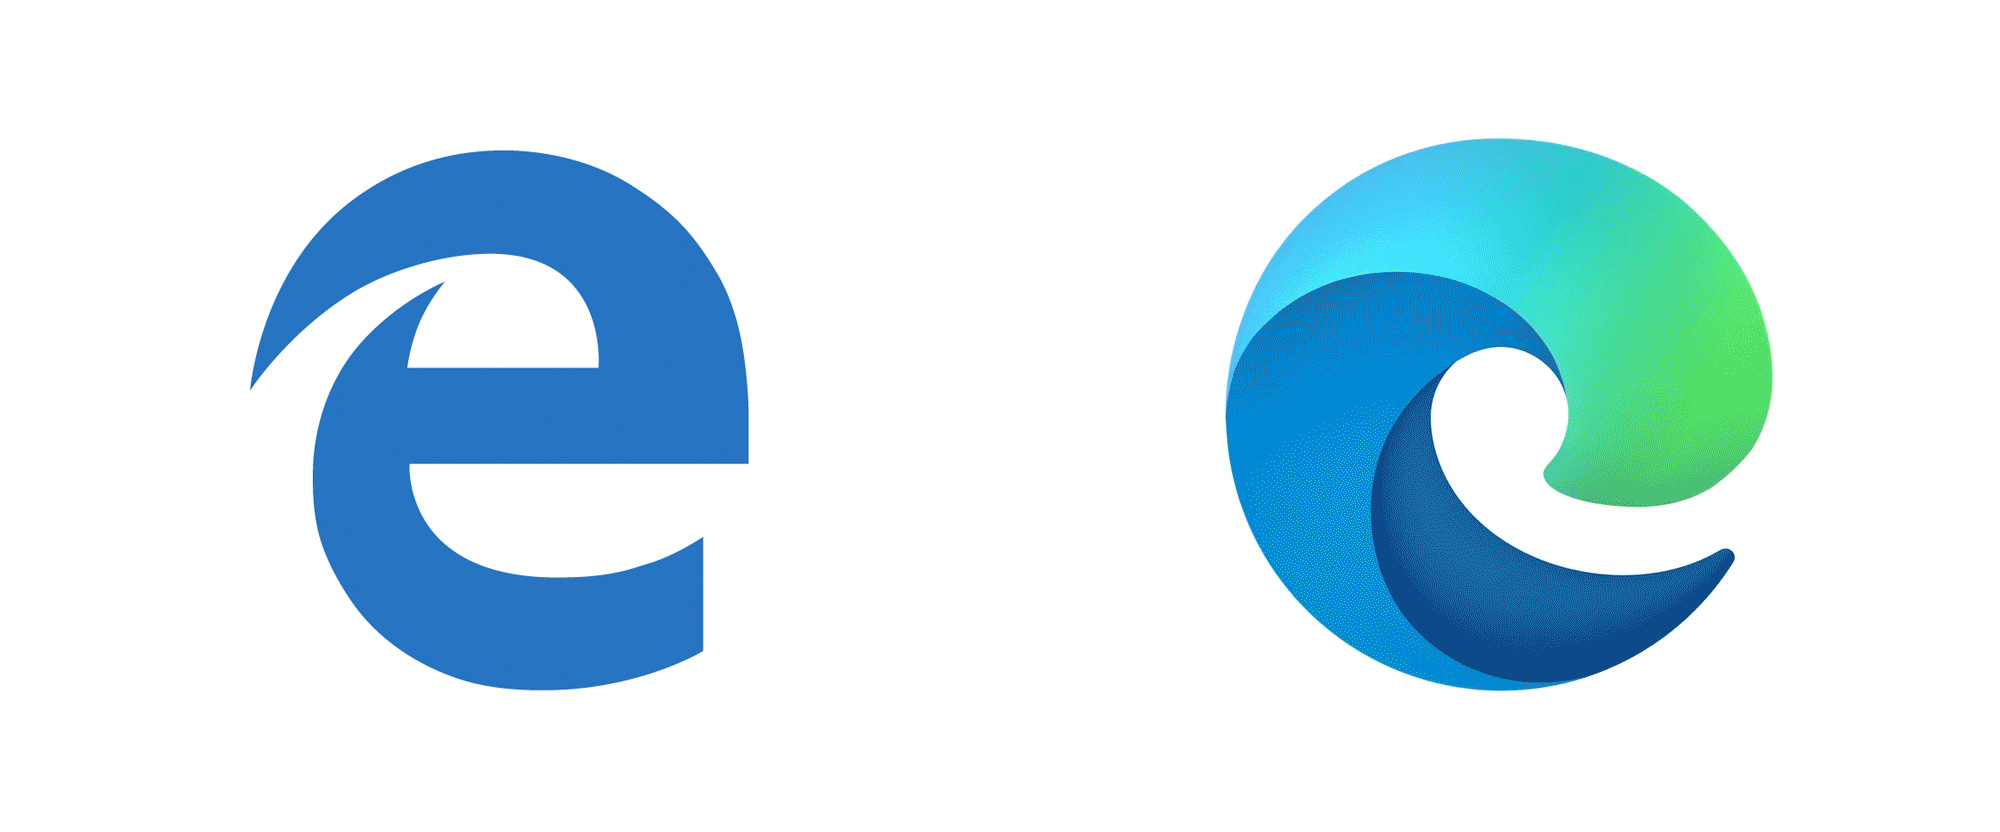 Microsoft edge icon image - osenine